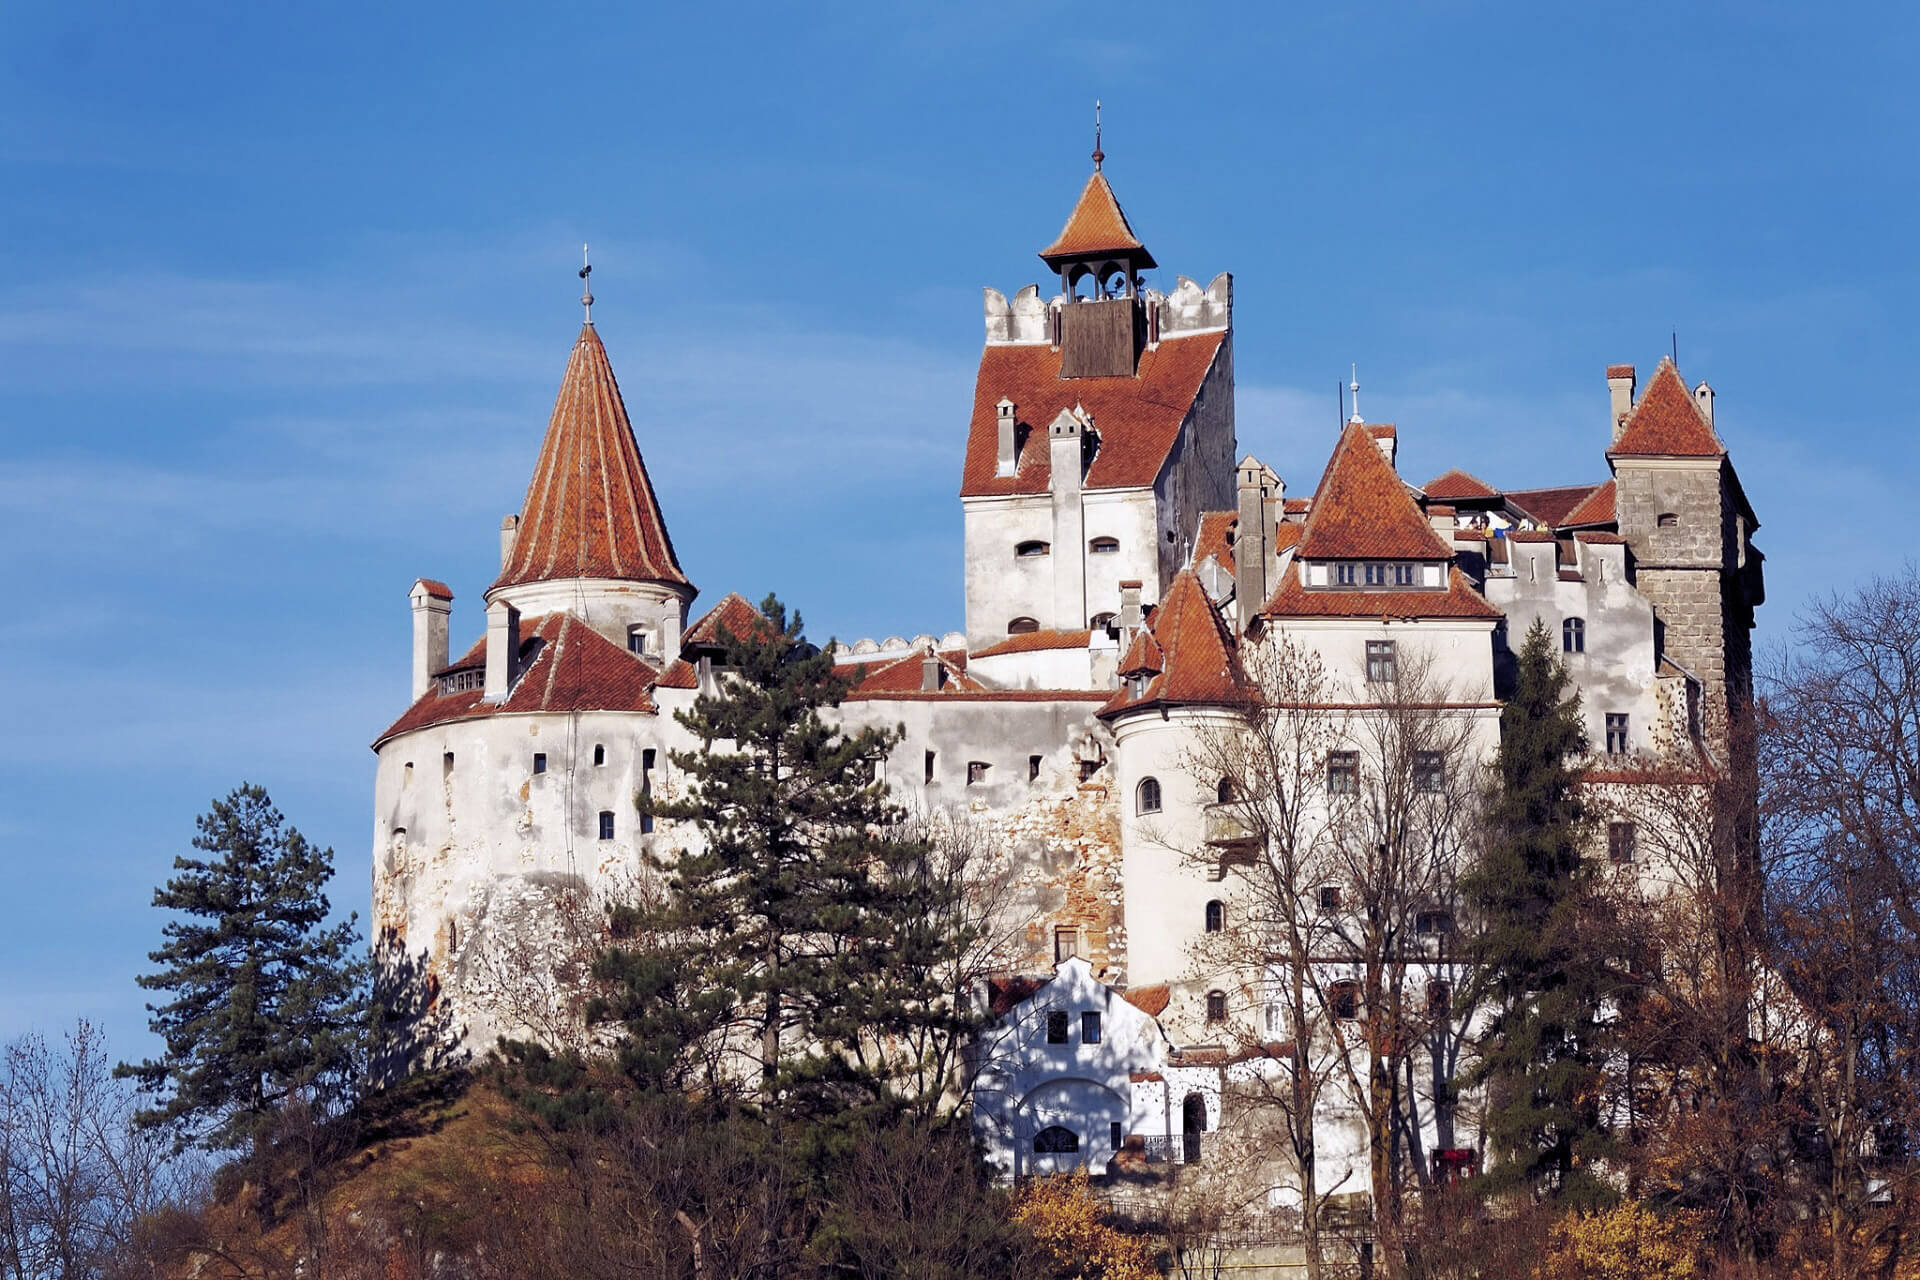 Dracula's kasteel open voor moedige gasten